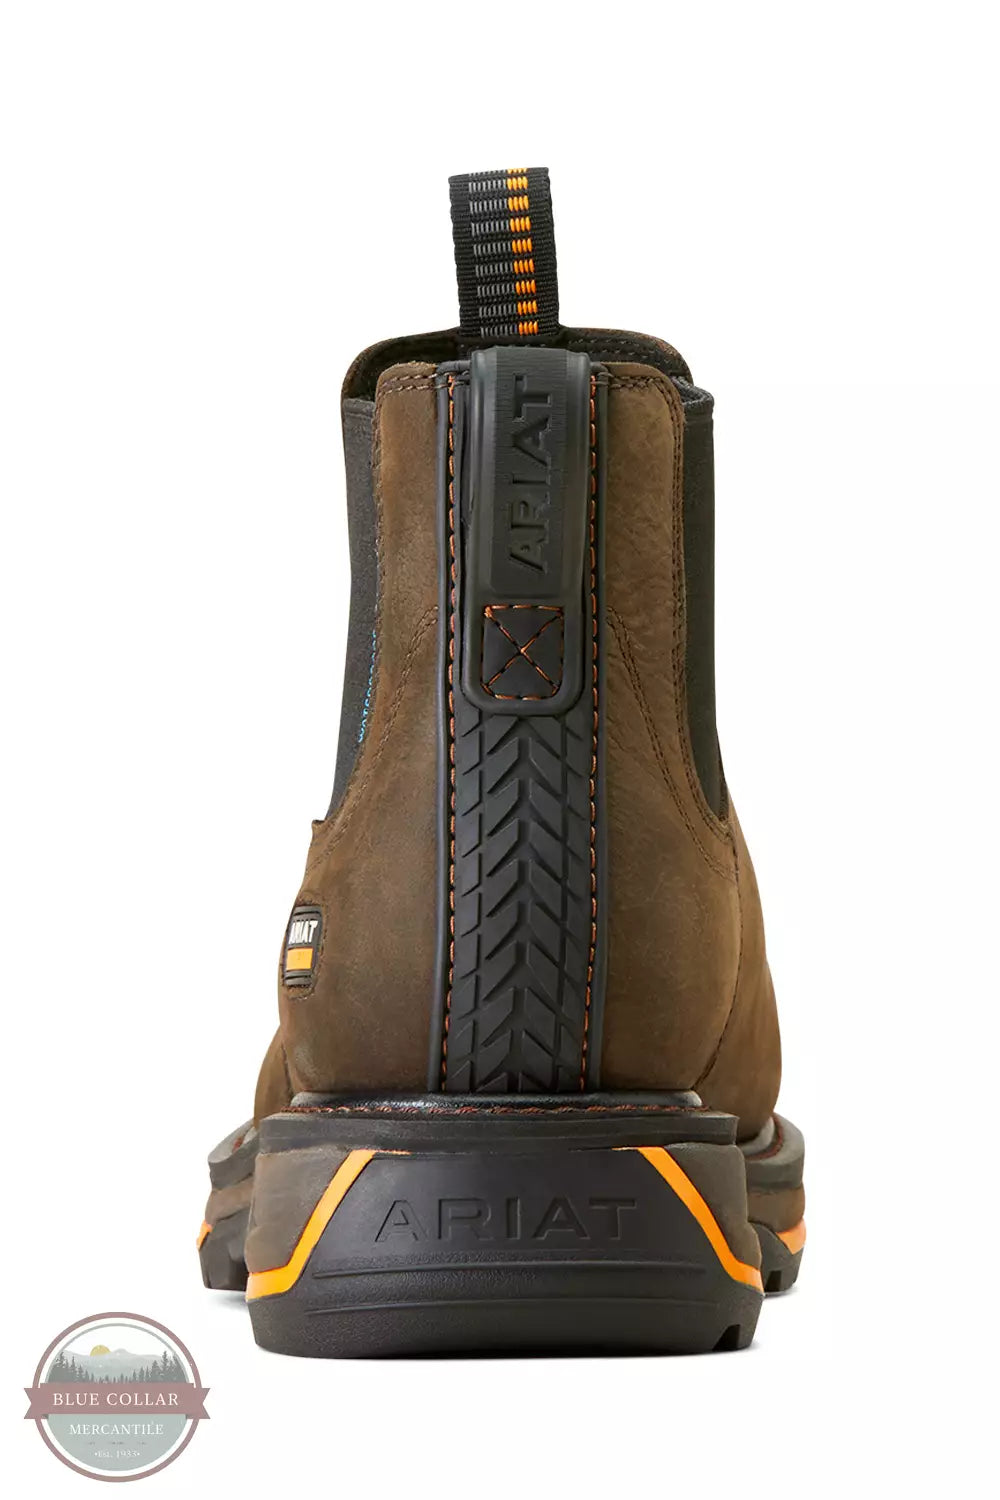 Ariat 10042544 Big Rig Chelsea Waterproof Composite Toe Work Boots in Iron Coffee Heel View